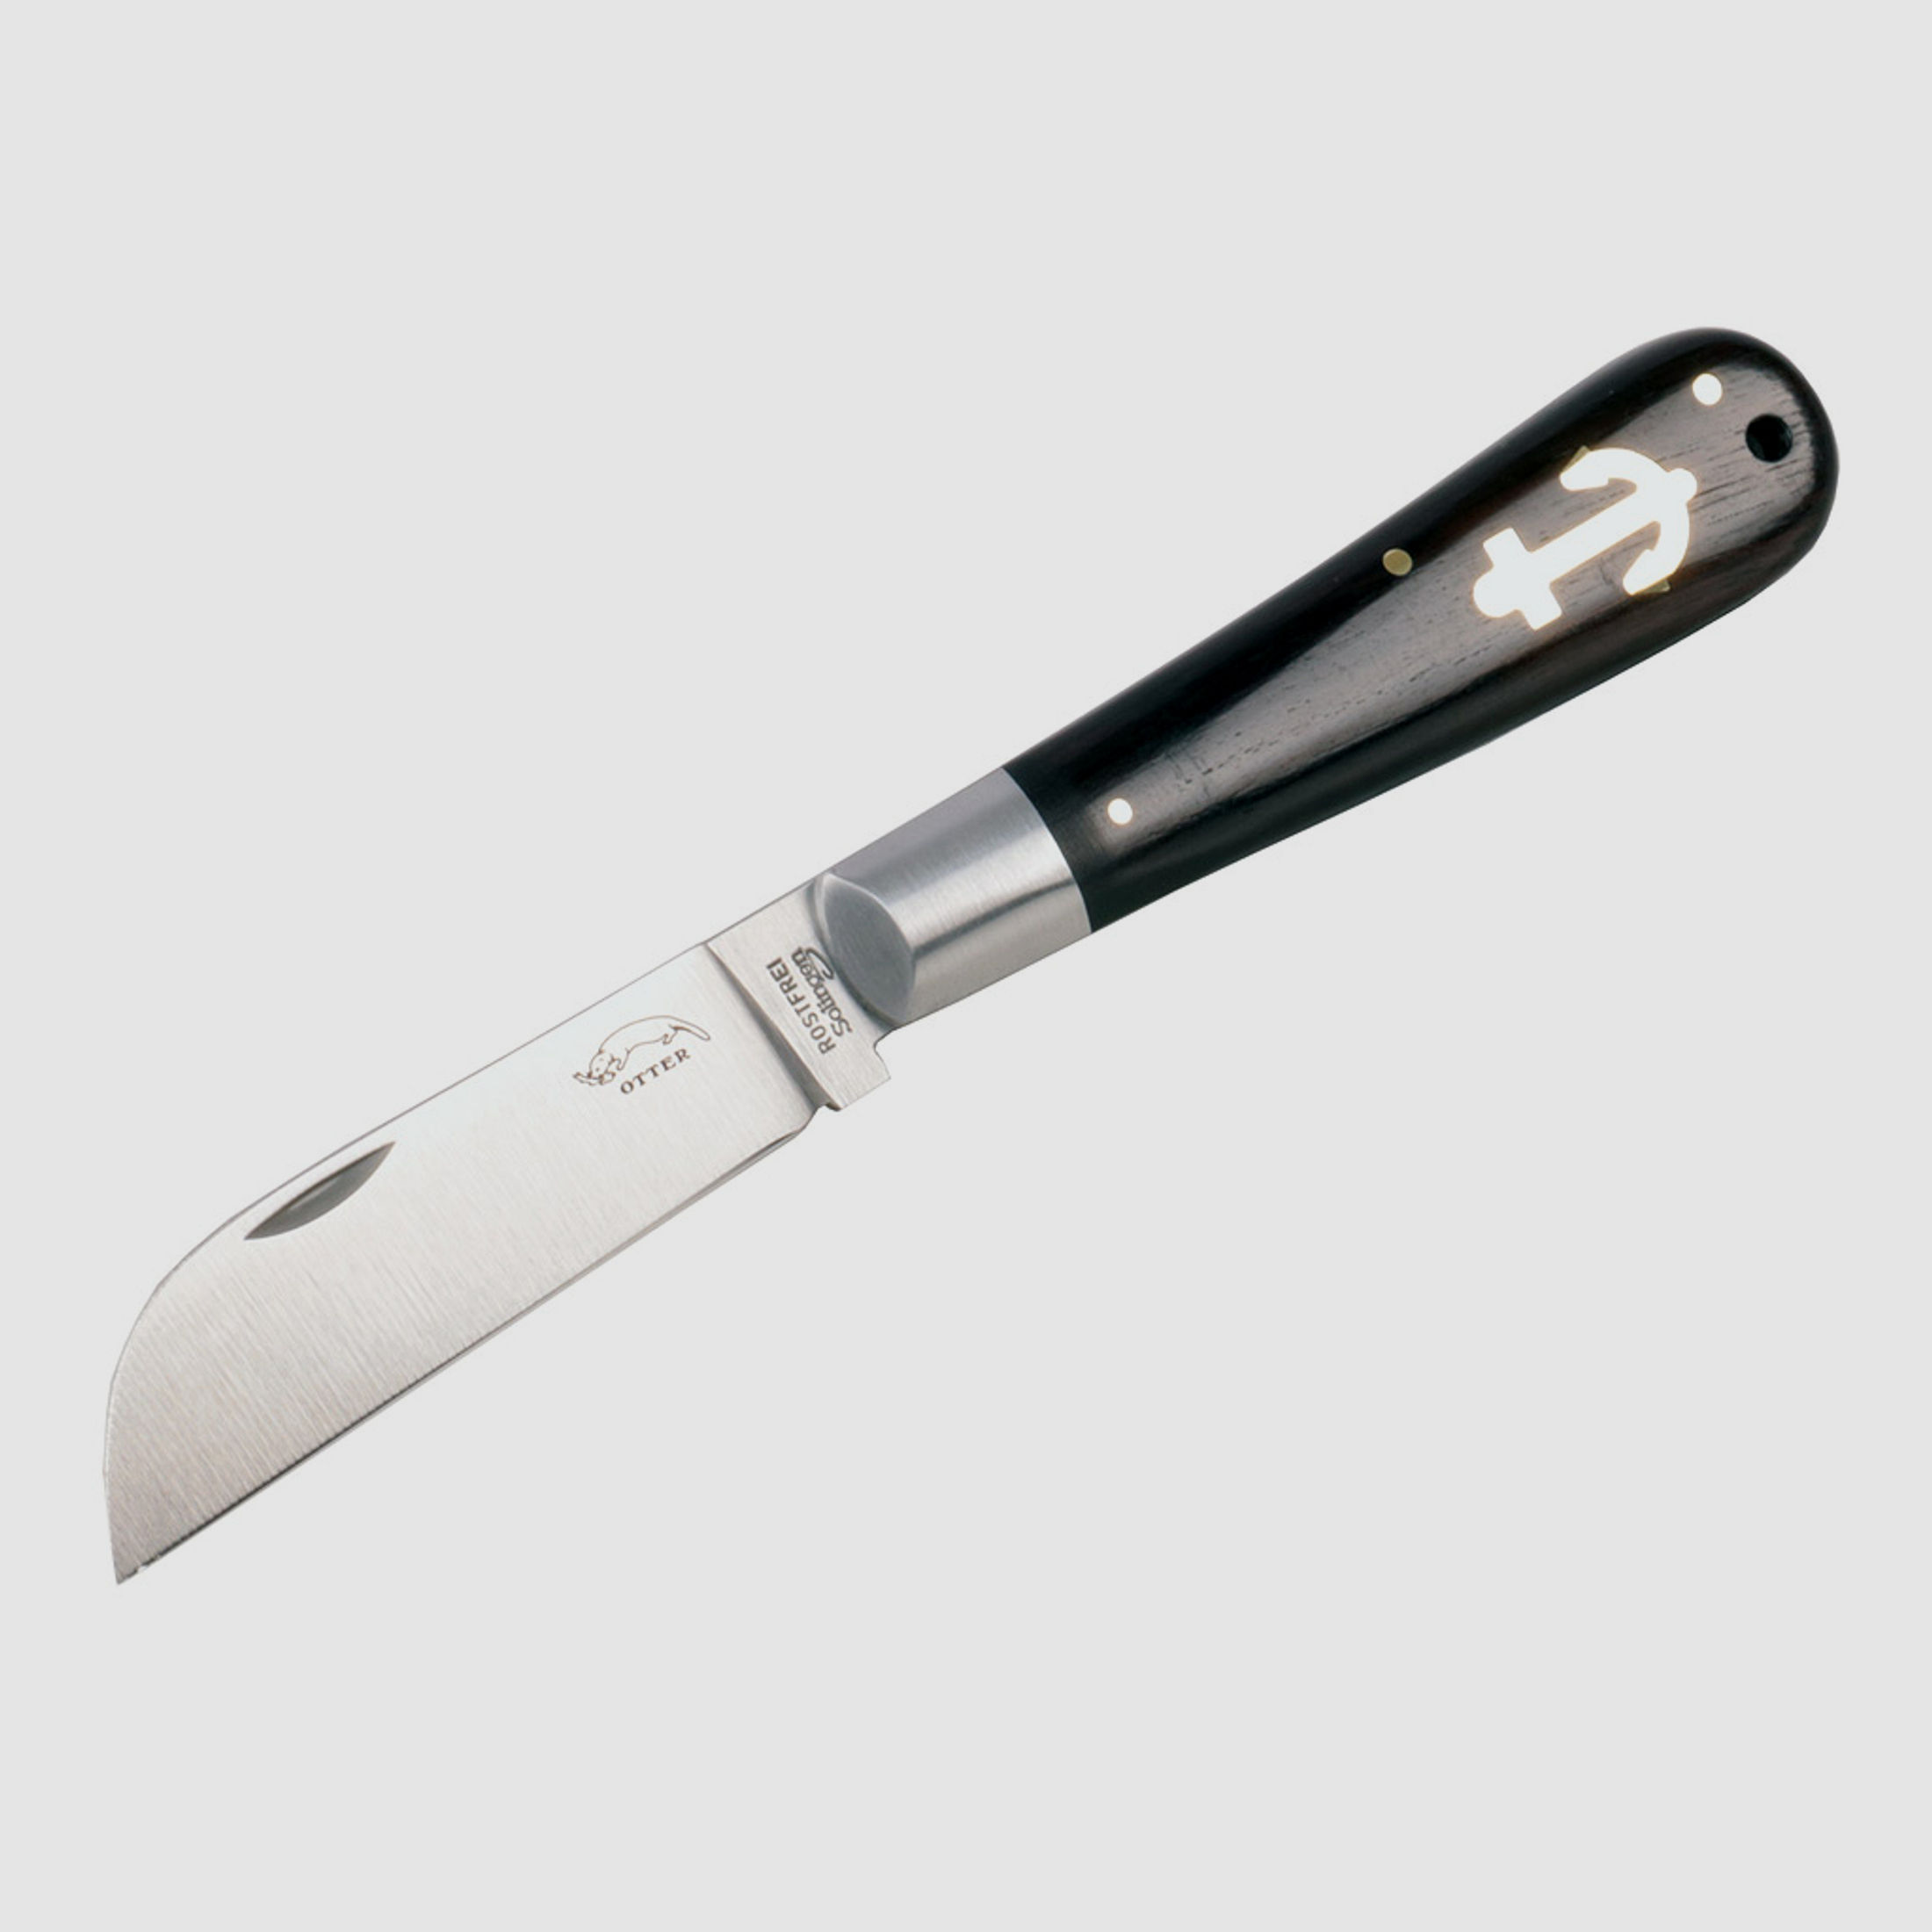 Taschenmesser Otter Ankermesser Grenadill Stahl 1.4034 KlingenlĂ¤nge 8,0 cm Griff Grenadill-Holz